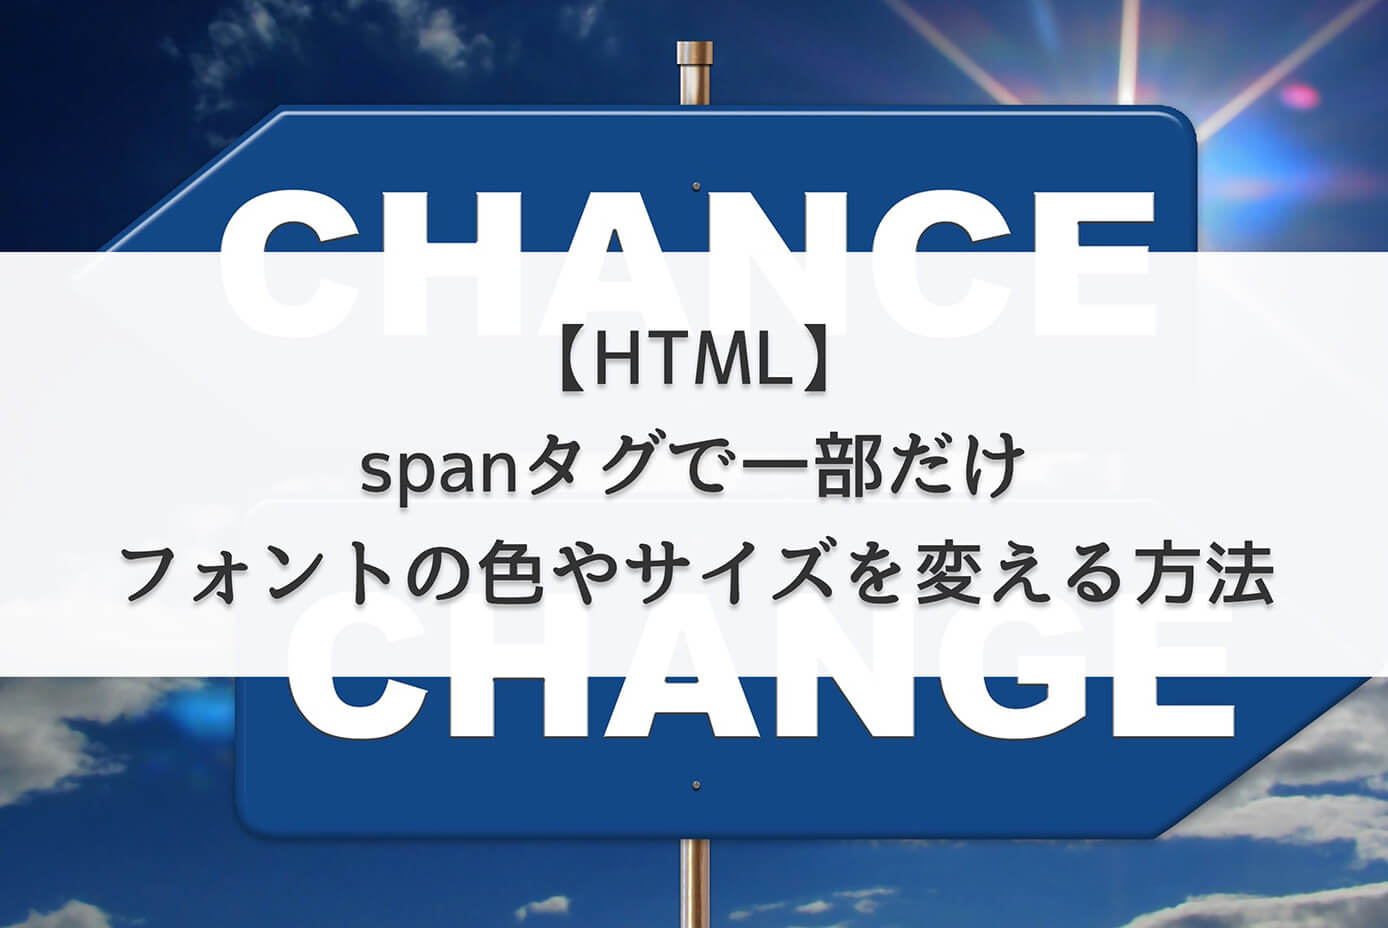 【HTML】spanタグで一部だけフォントの色やサイズを変える方法